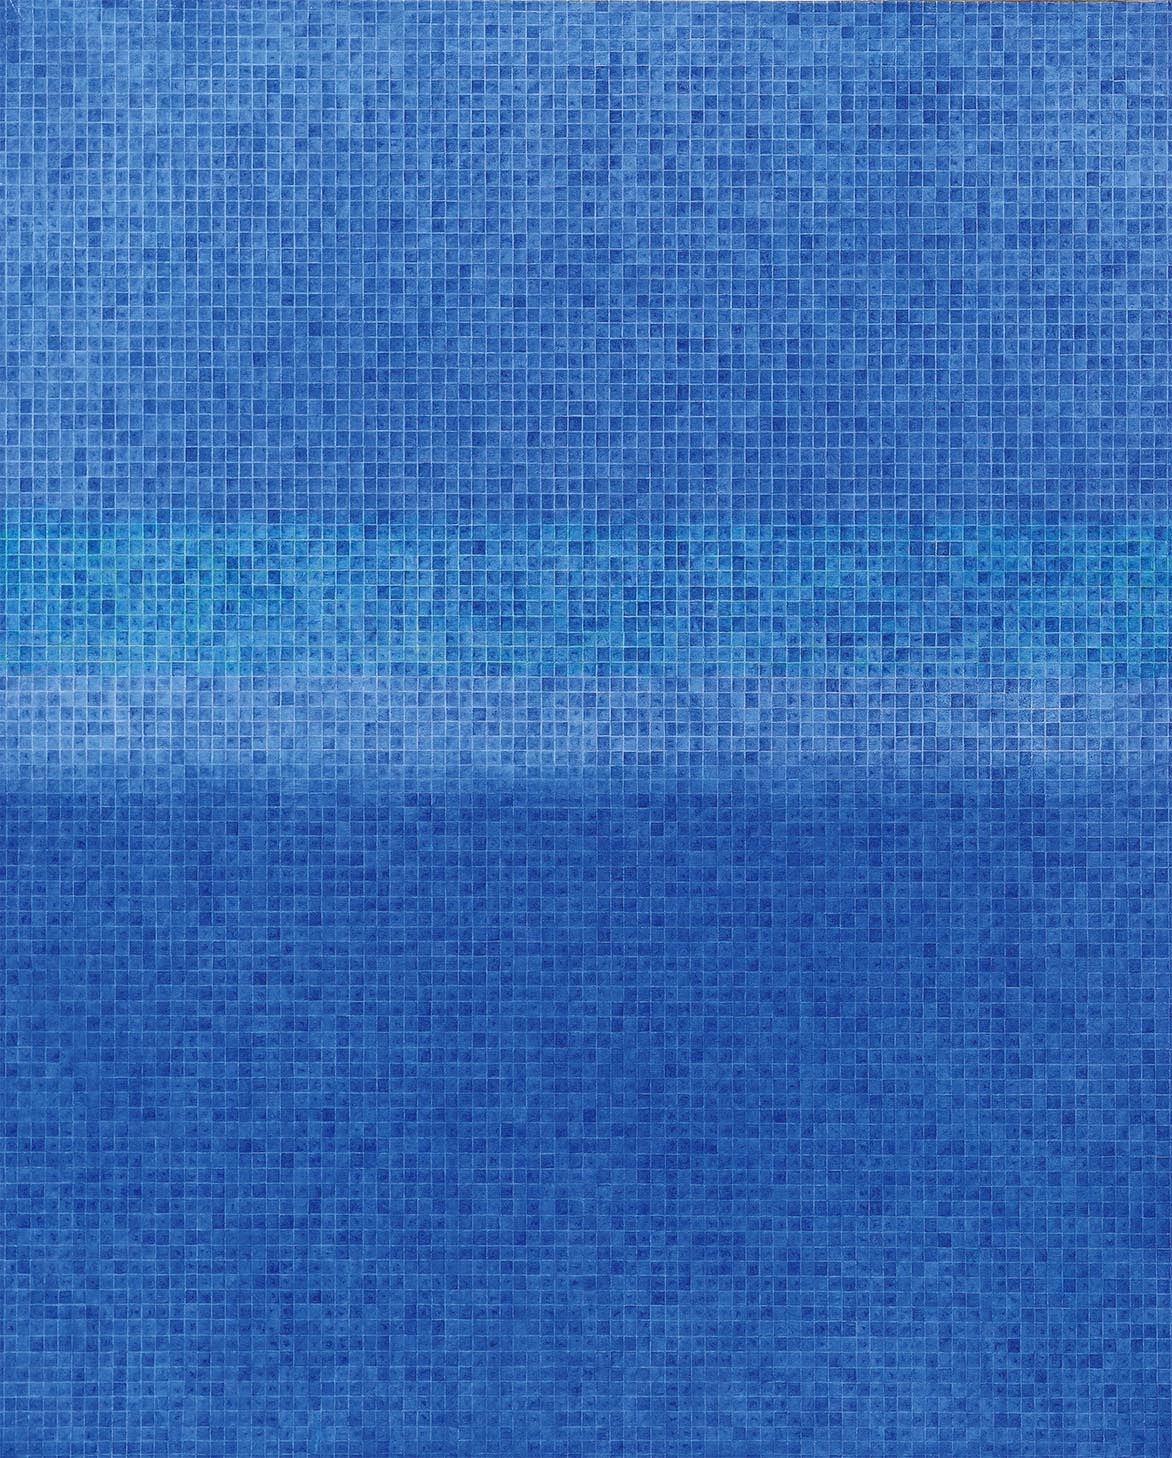 蓝光 油彩画布 162x130cm